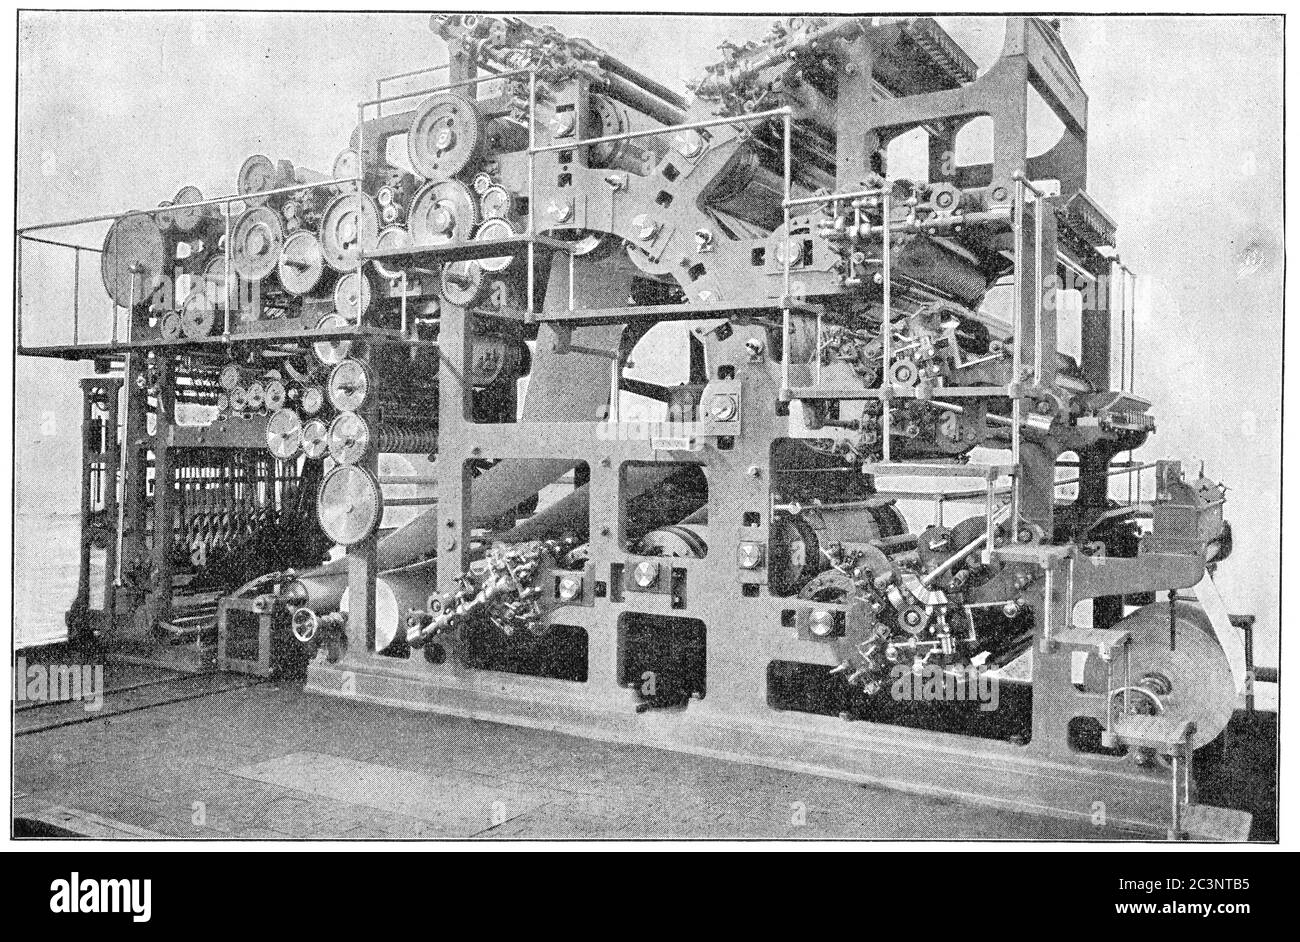 Presse d'impression six couleurs d'une usine de construction de machines d'Augsbourg. Illustration du XIXe siècle. Fond blanc. Banque D'Images